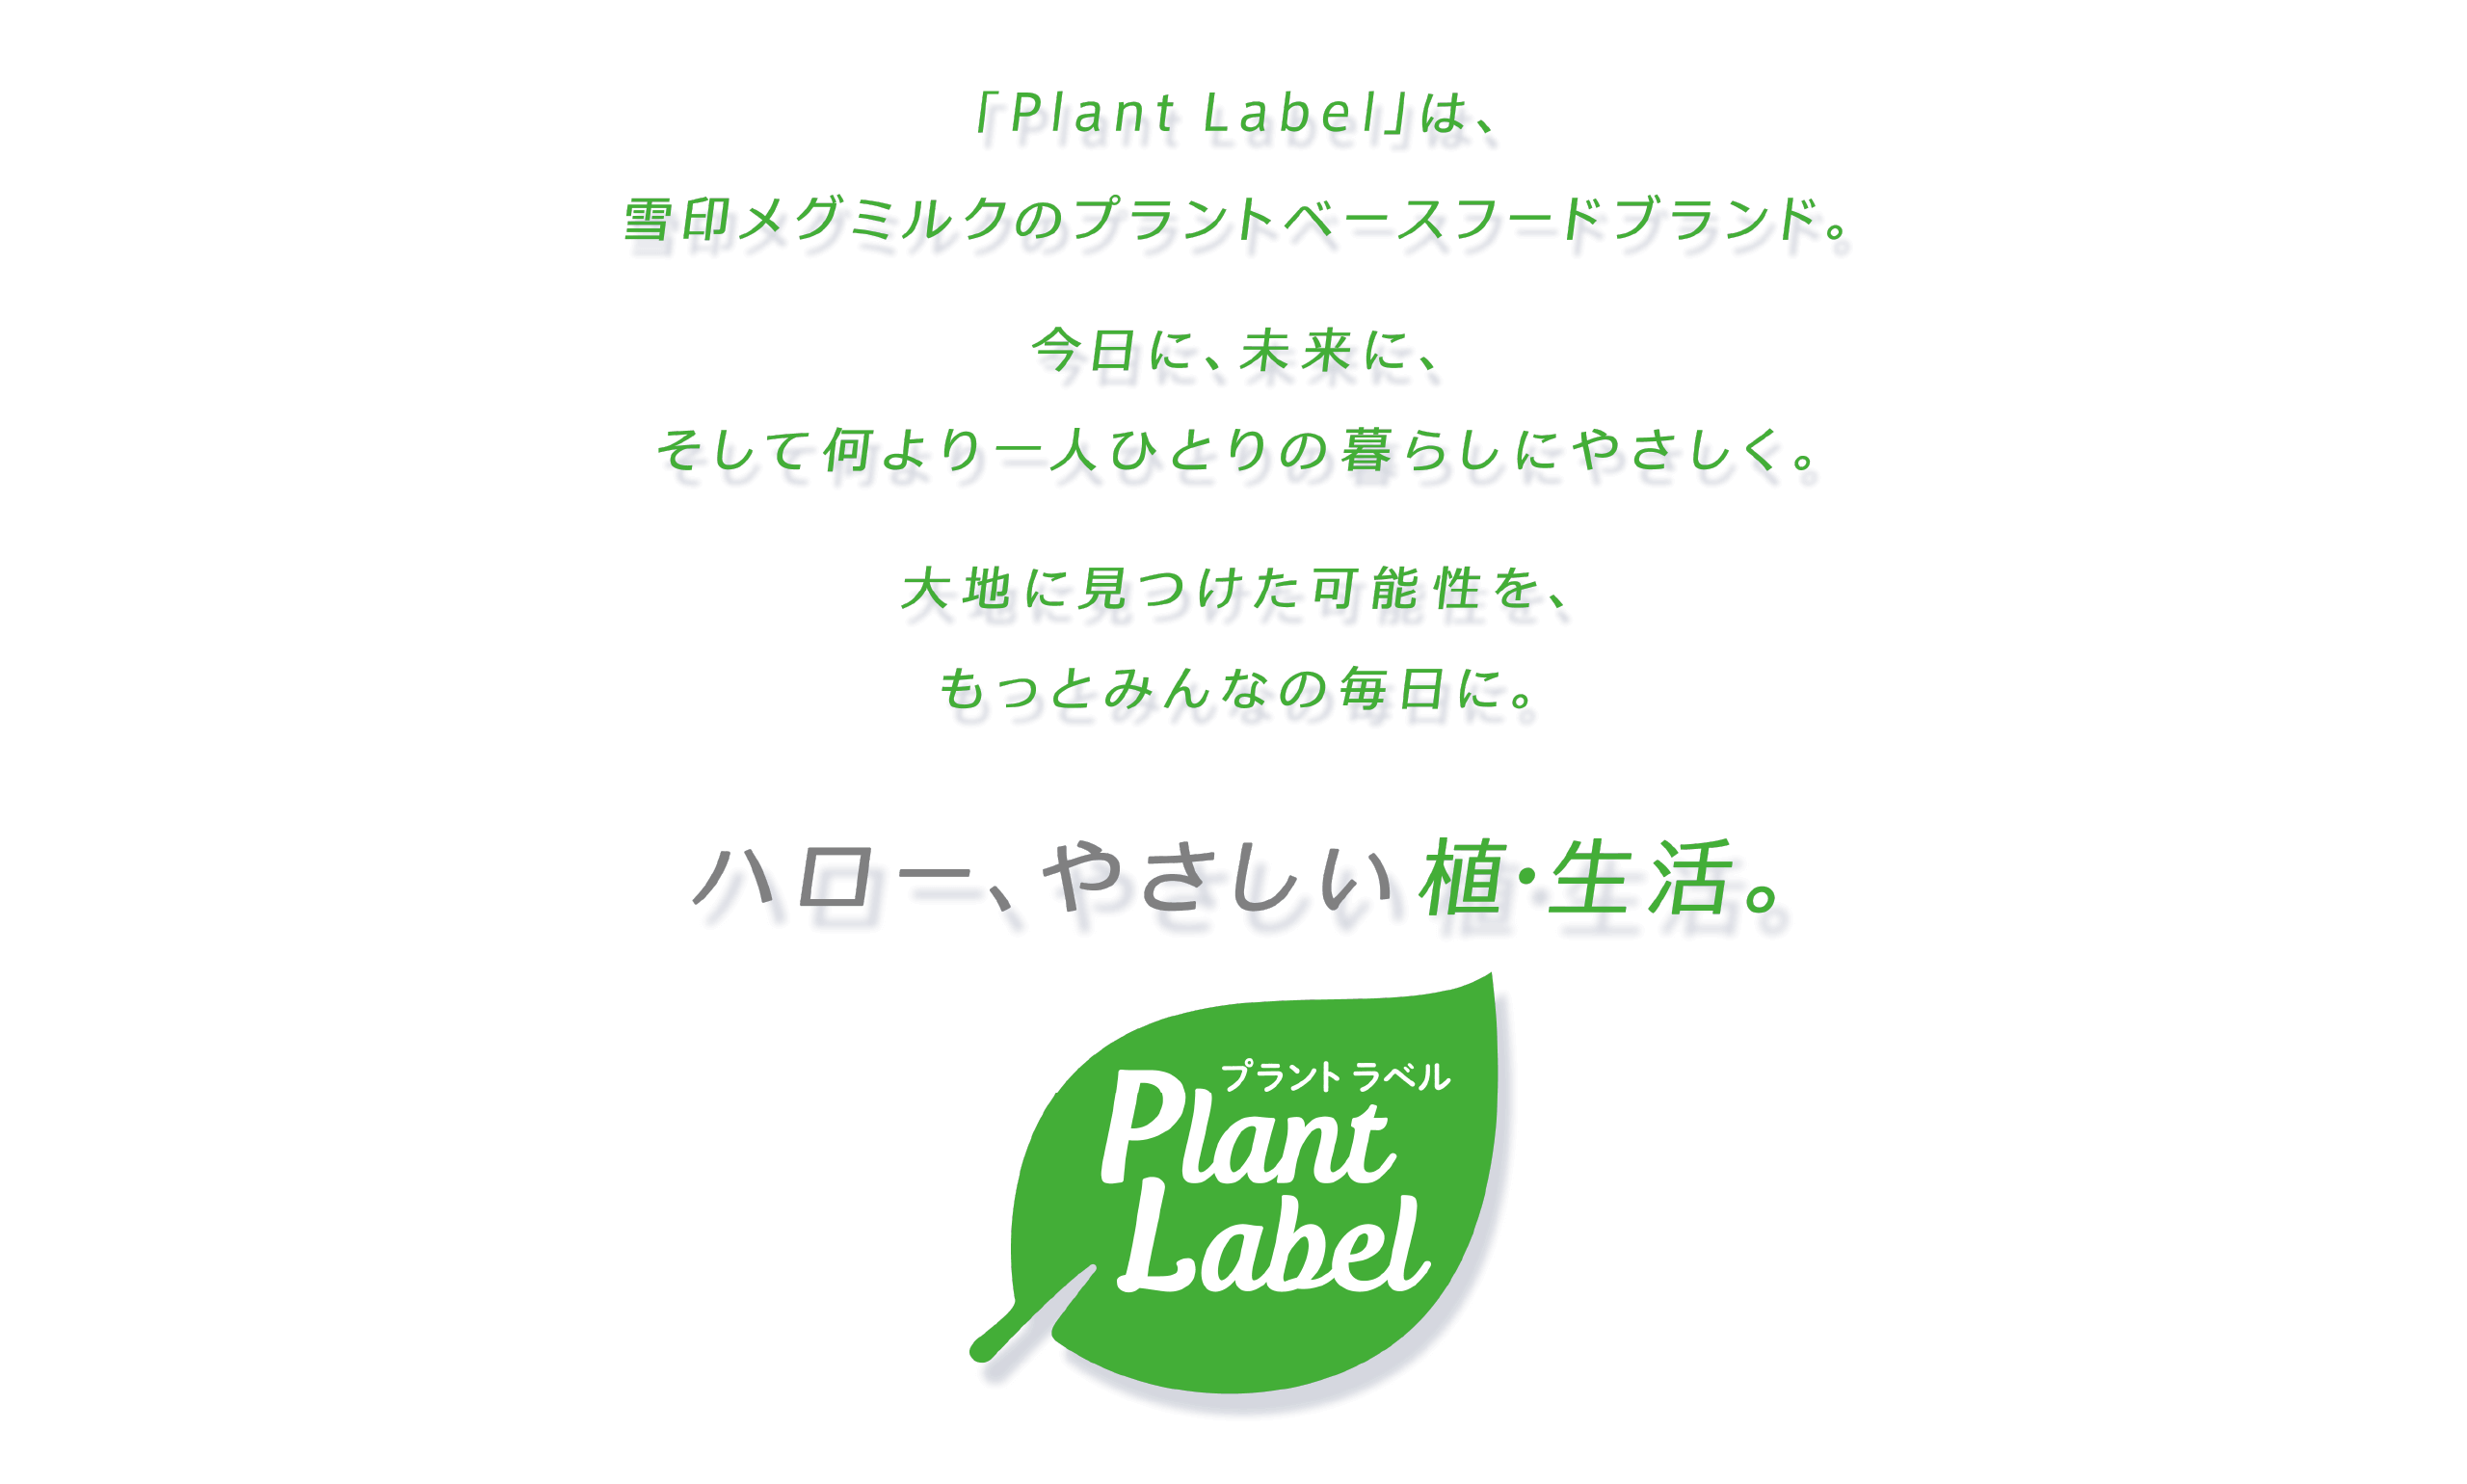 「Plant Label」は雪印メグミルクのプラントベースフードブランド。今日に、未来に、そして何より一人ひとりの暮らしにやさしく。大地に見つけた可能性を、もっとみんなの毎日に。ハロー、やさしい植・生活